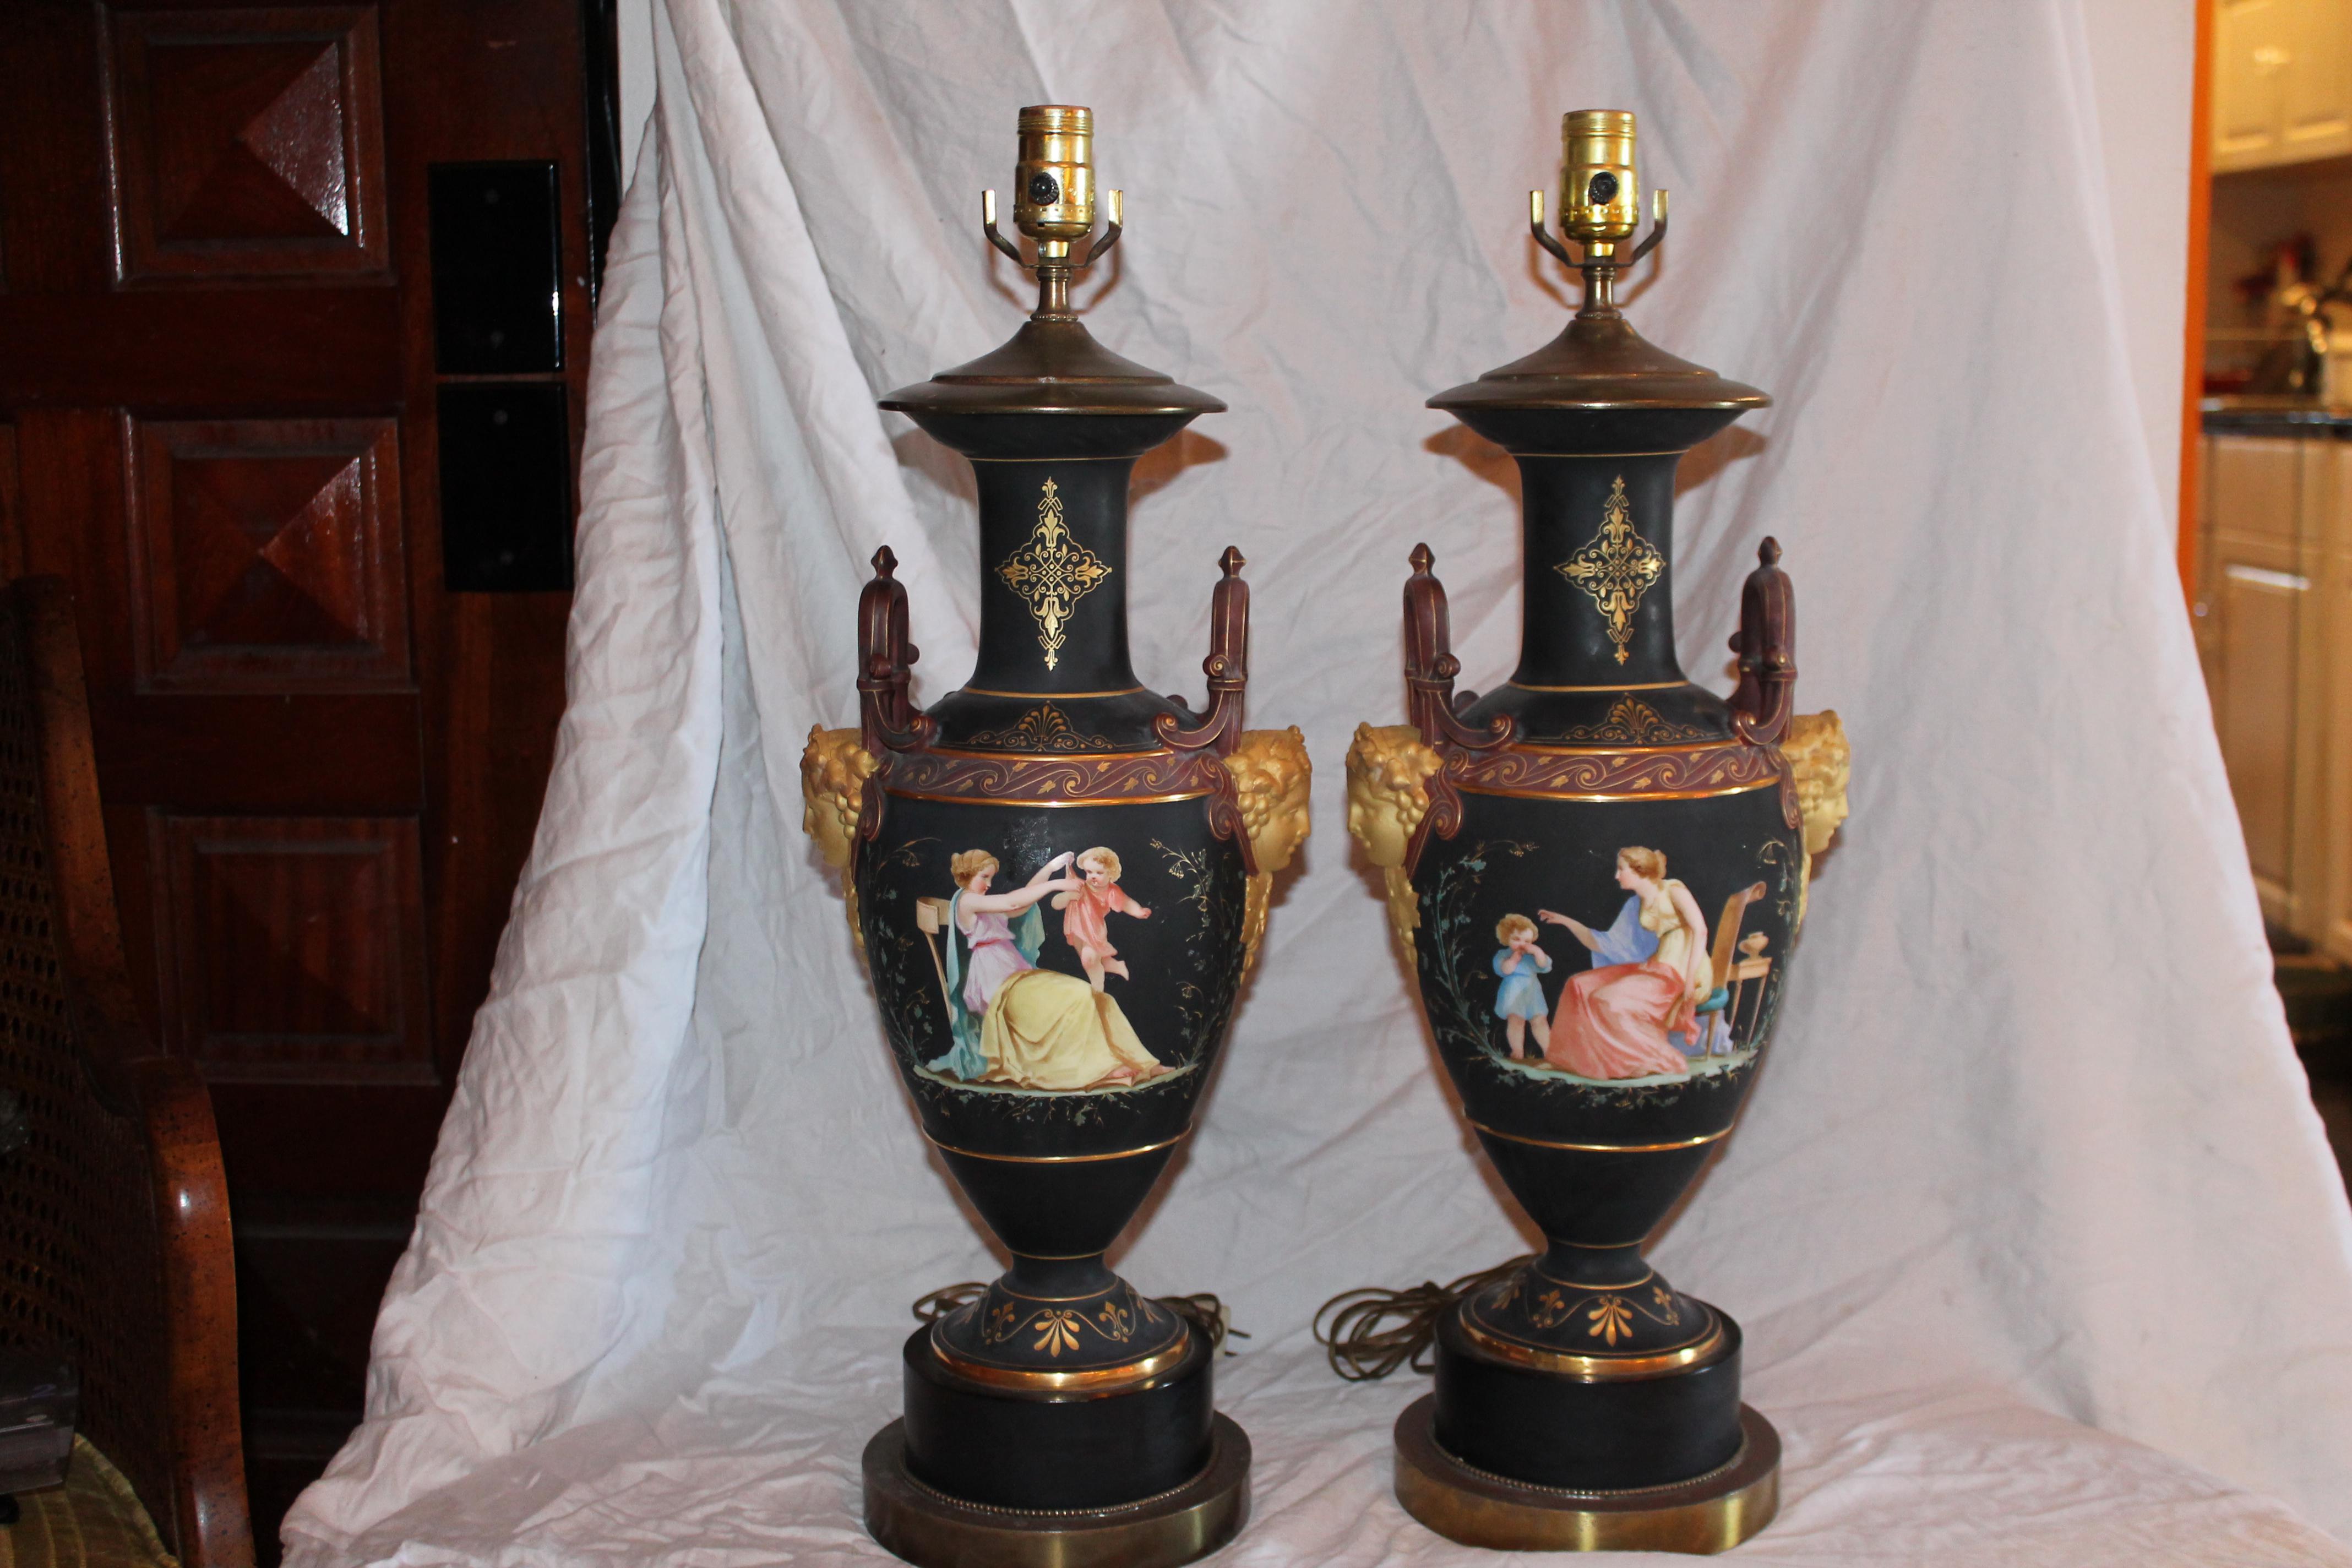 Paar c1900 Französisch Louis XIV Stil Schwarz Biskuit Tischlampen. Wunderschön verziert mit Cherub und Jungfrau. Diese Lampen sind atemberaubend und in sehr gutem Zustand, ohne Probleme. 